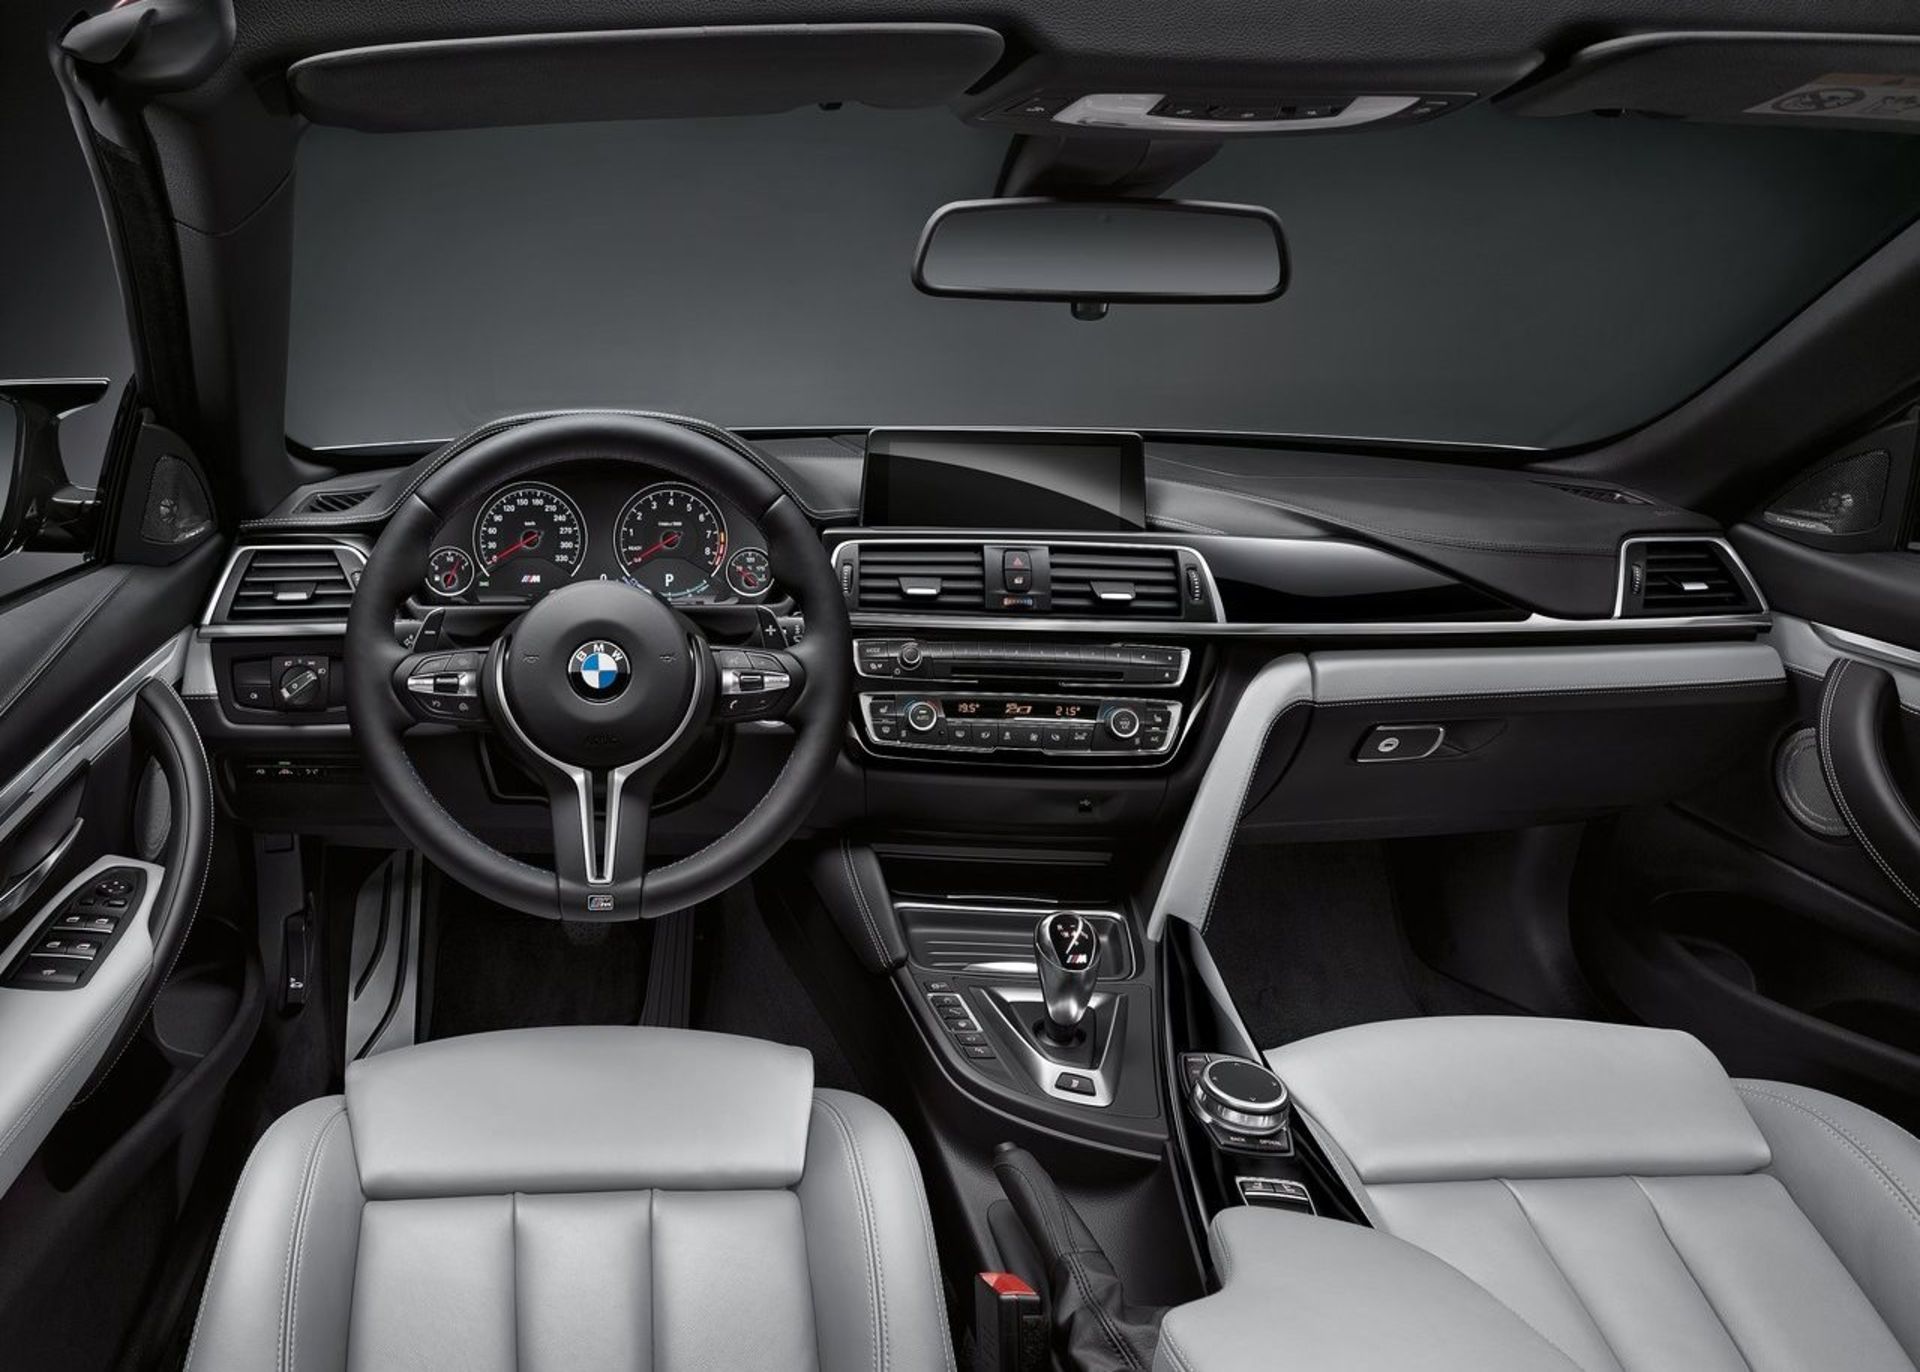 بی ام و سری۴ / BMW M4 